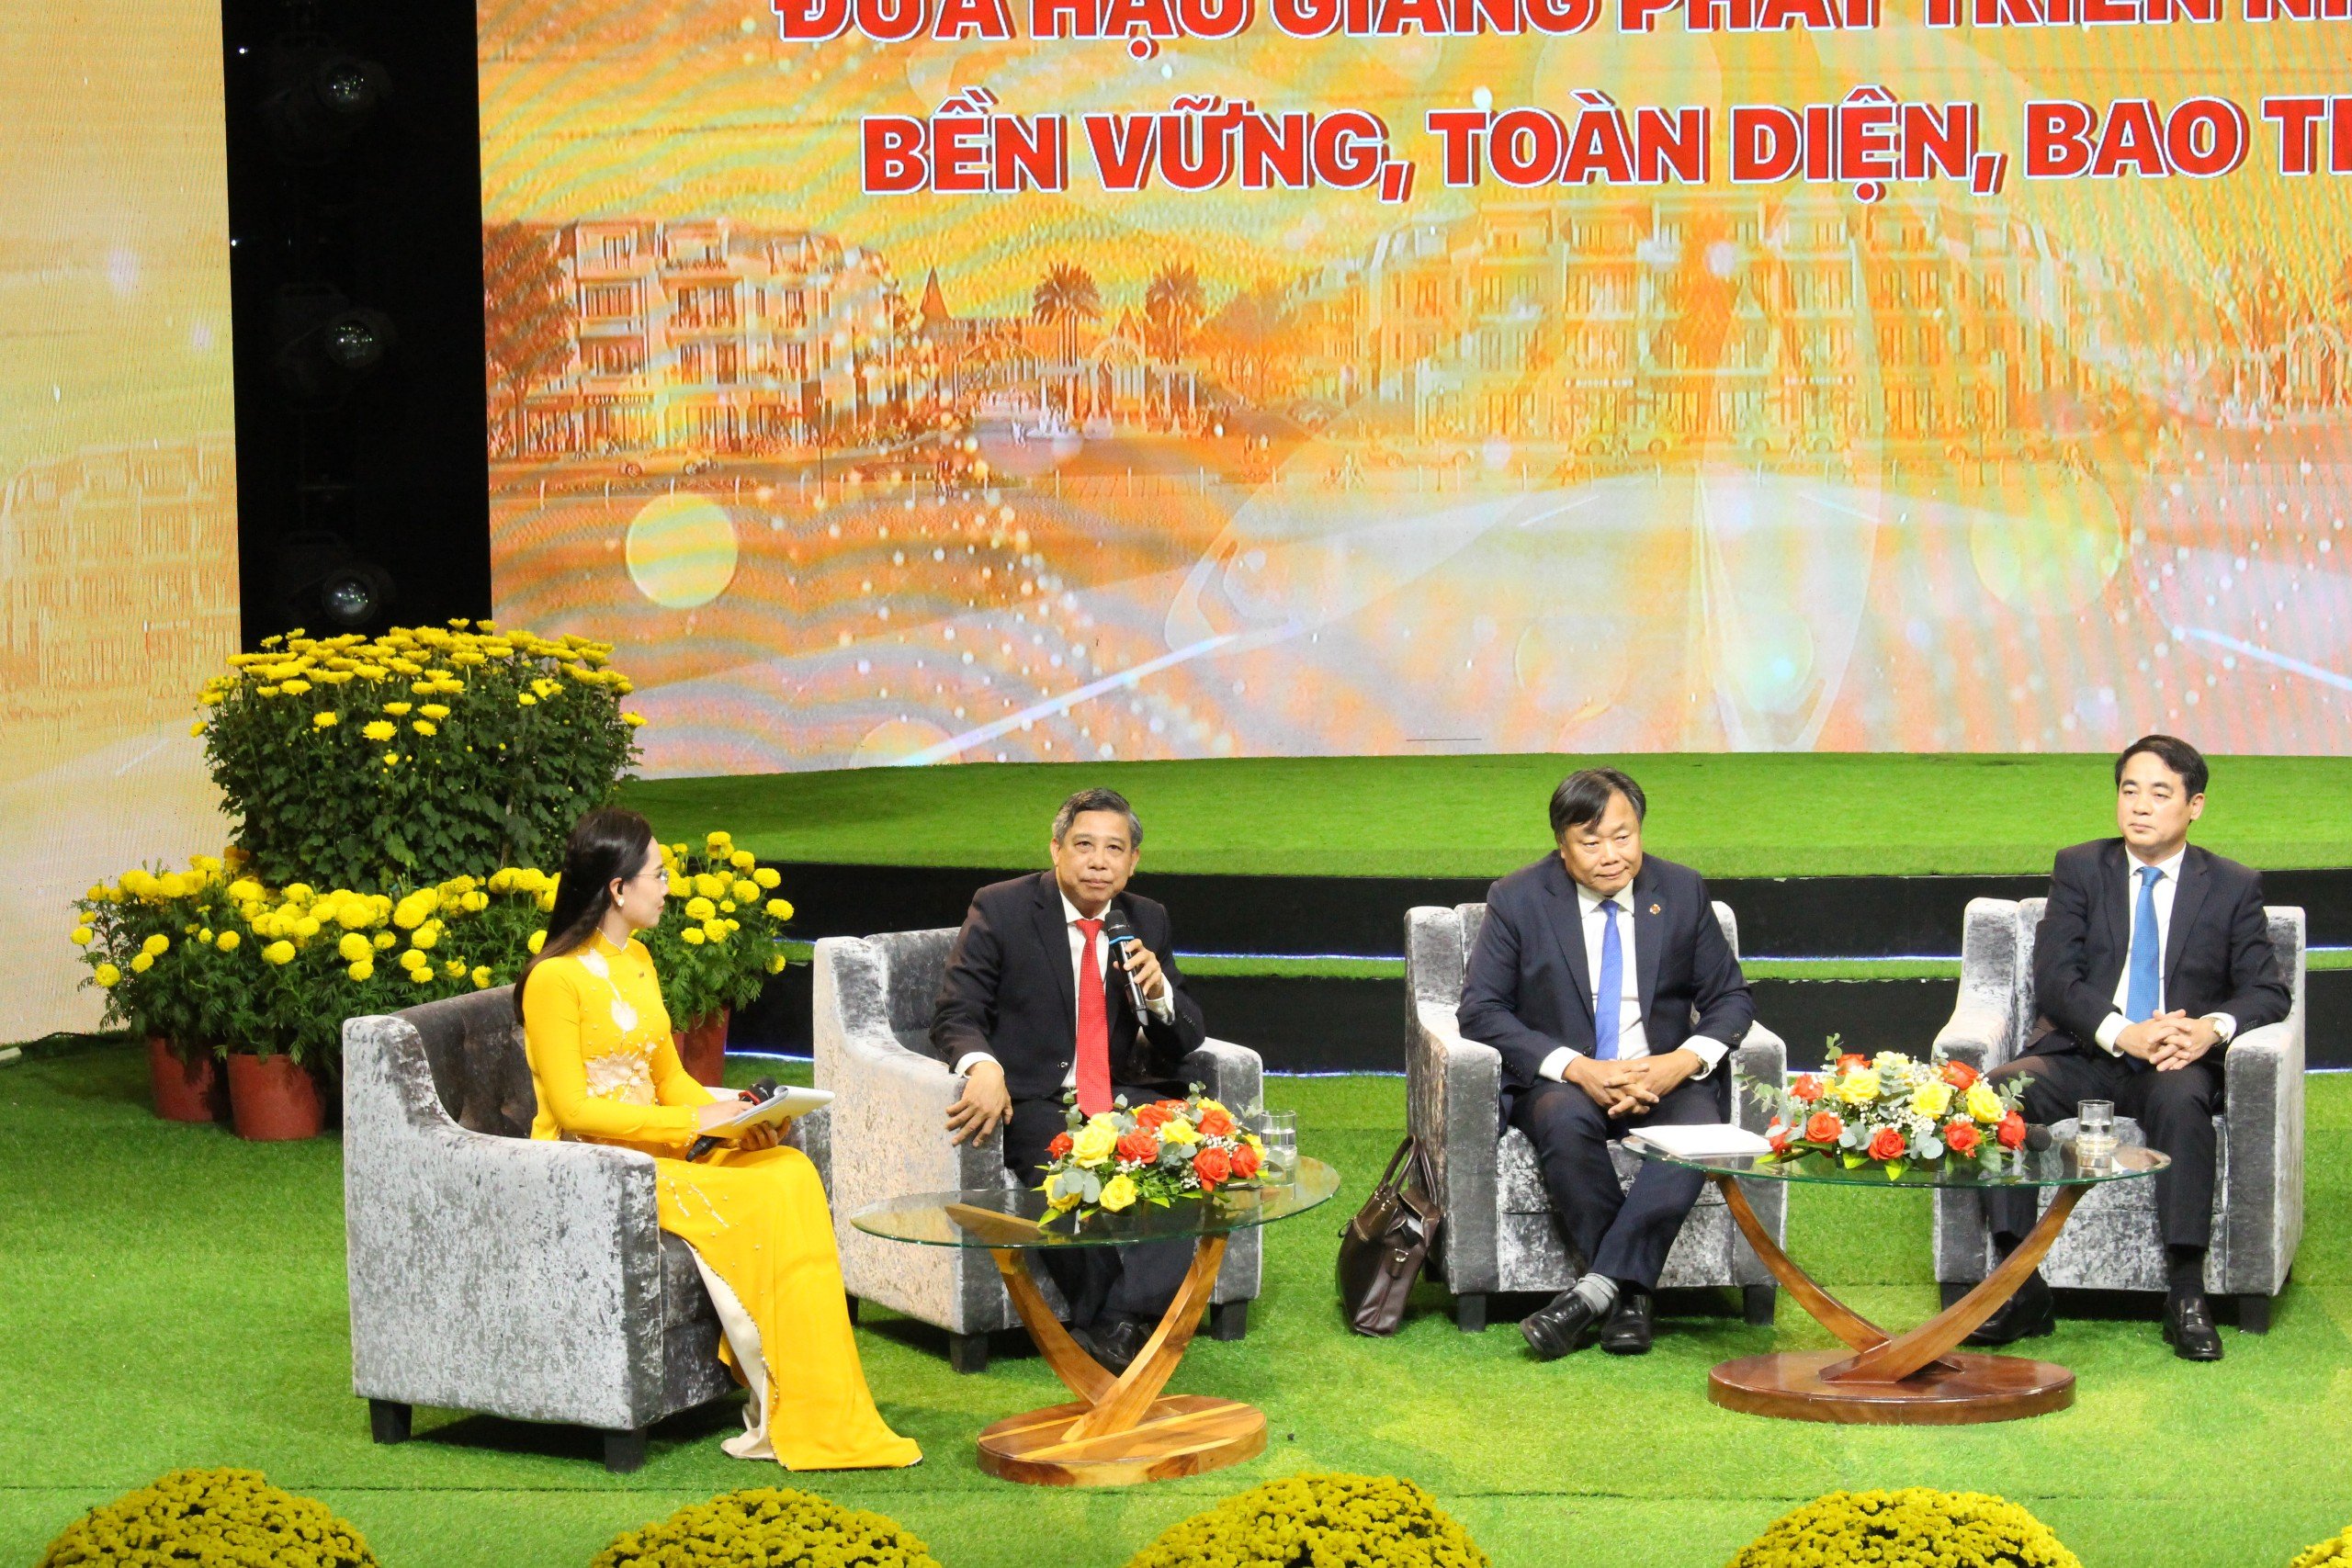 Đồng chí Đồng Văn Thanh, Phó Bí thư Tỉnh ủy, Chủ tịch UBND tỉnh Hậu Giang phát biểu tại diễn đàn.